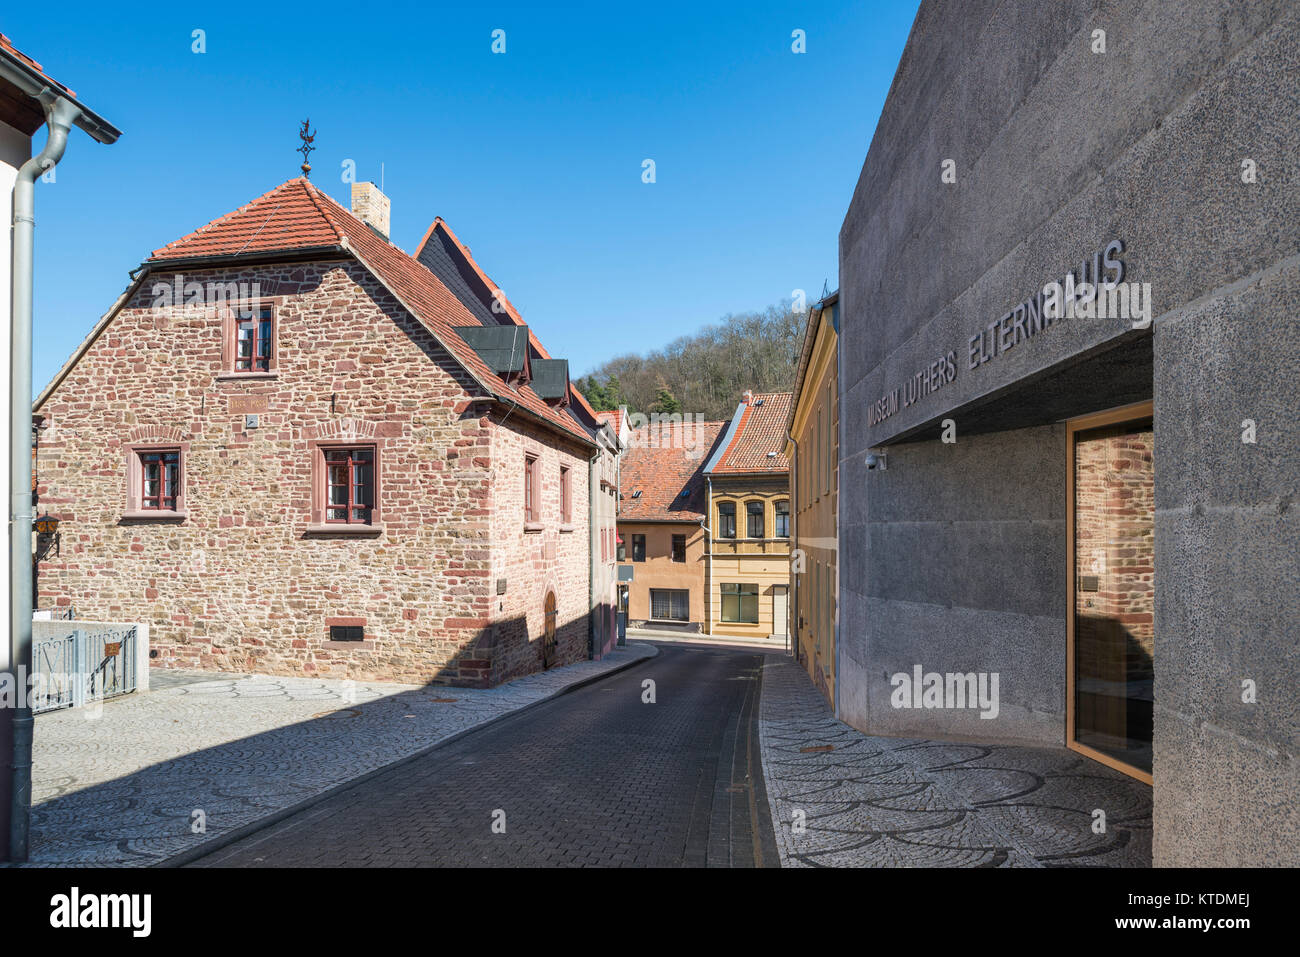 Hier lebte Elternhaus Luthers, 1484-1497, rechts moderner Museumsneubau von 2014, Mansfeld-Lutherstadt, Sajonia-Anhalt, Alemania Foto de stock